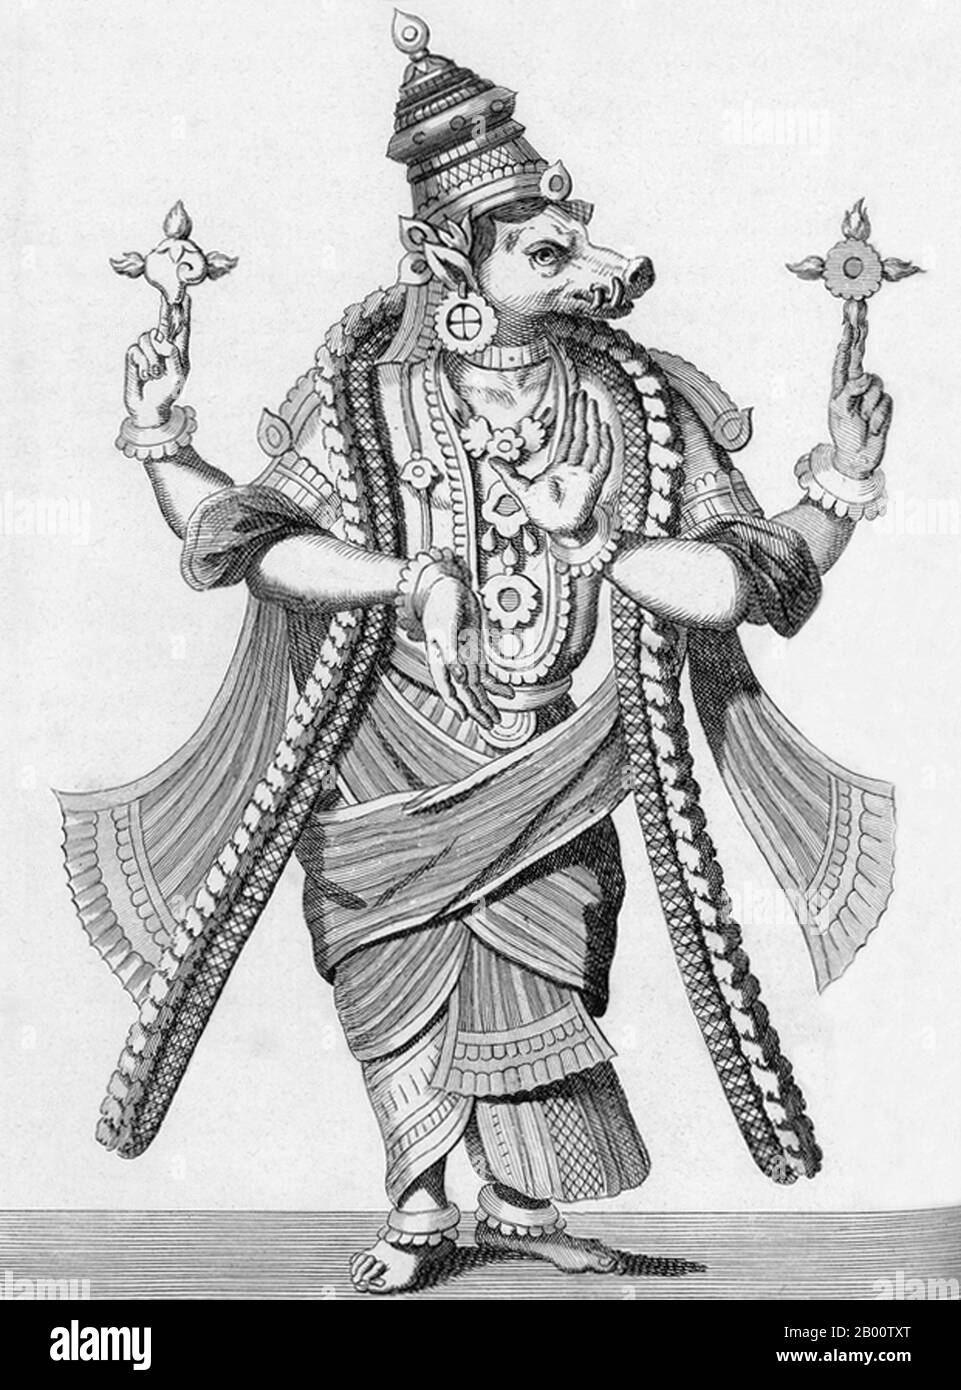 Inde: 'Troisième Avatar (Incarnation) de Vishnu comme Varaha, le Boar'. Illustration de Pierre Sonnerat (1748-1814), 1782. Pierre Sonnerat (1748-1814) est un naturaliste et explorateur français qui a effectué plusieurs voyages en Asie du Sud-est entre 1769 et 1781. Il a publié ce compte-rendu en deux volumes de son voyage de 1774-81 en 1782. Le volume 1 traite exclusivement de l'Inde, dont la culture Sonnerat admirait beaucoup, et est particulièrement remarquable pour sa discussion élargie de la religion en Inde, l'hindouisme en particulier. Le livre est illustré avec des gravures basées sur les dessins de Sonnerat. Banque D'Images